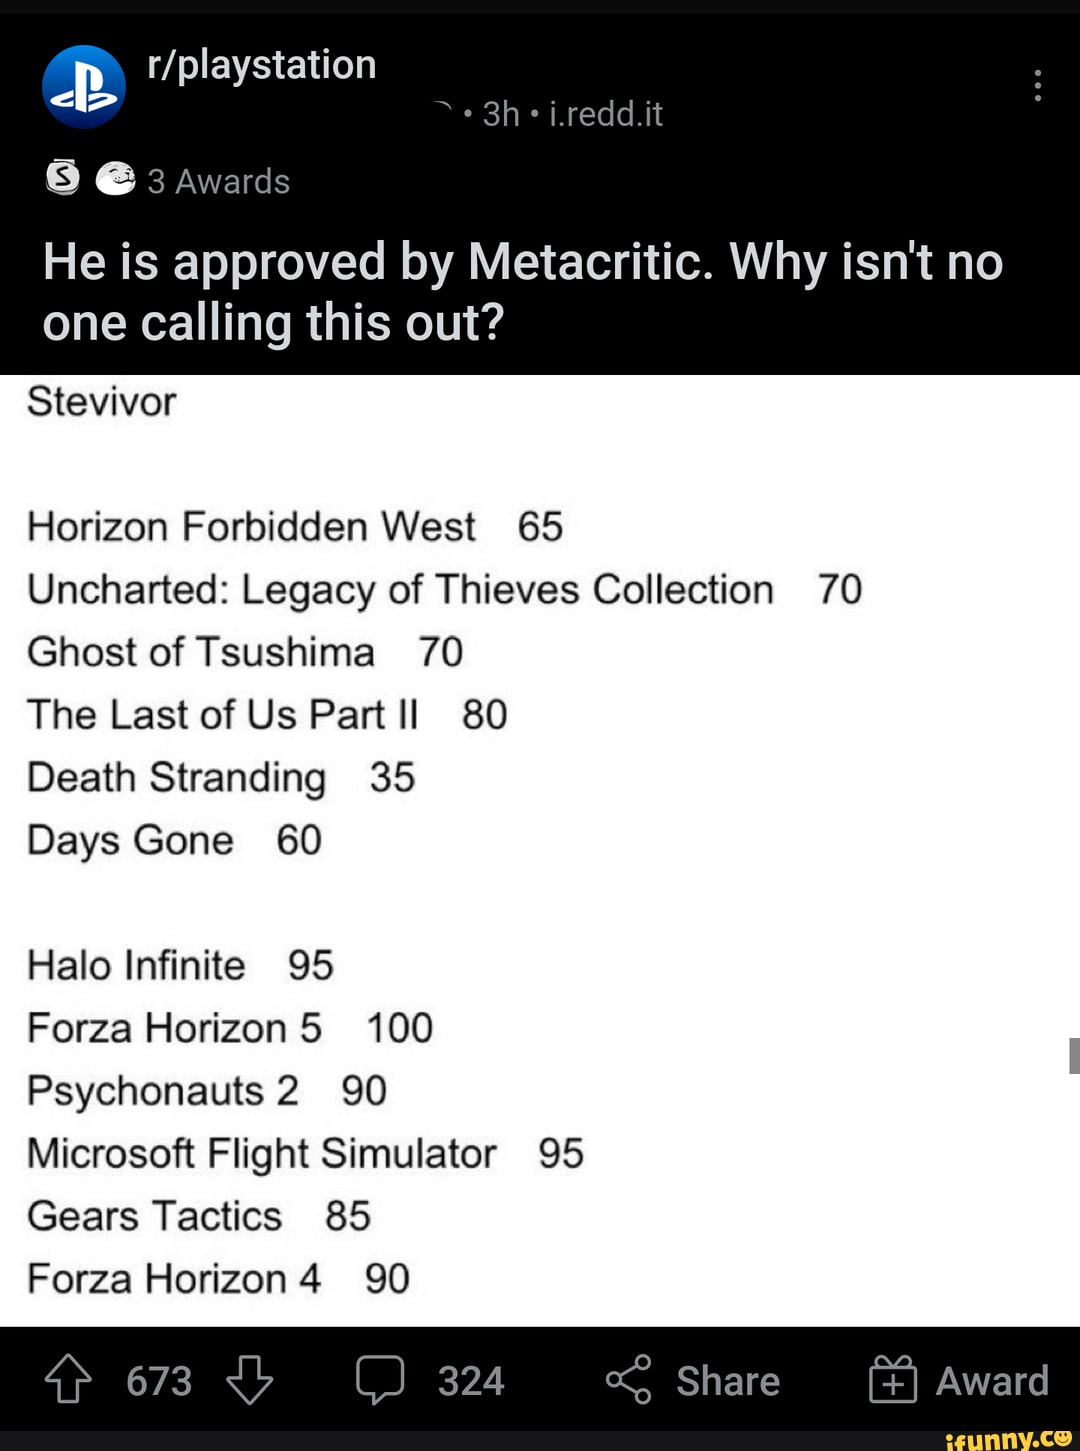 Gears Tactics - Metacritic